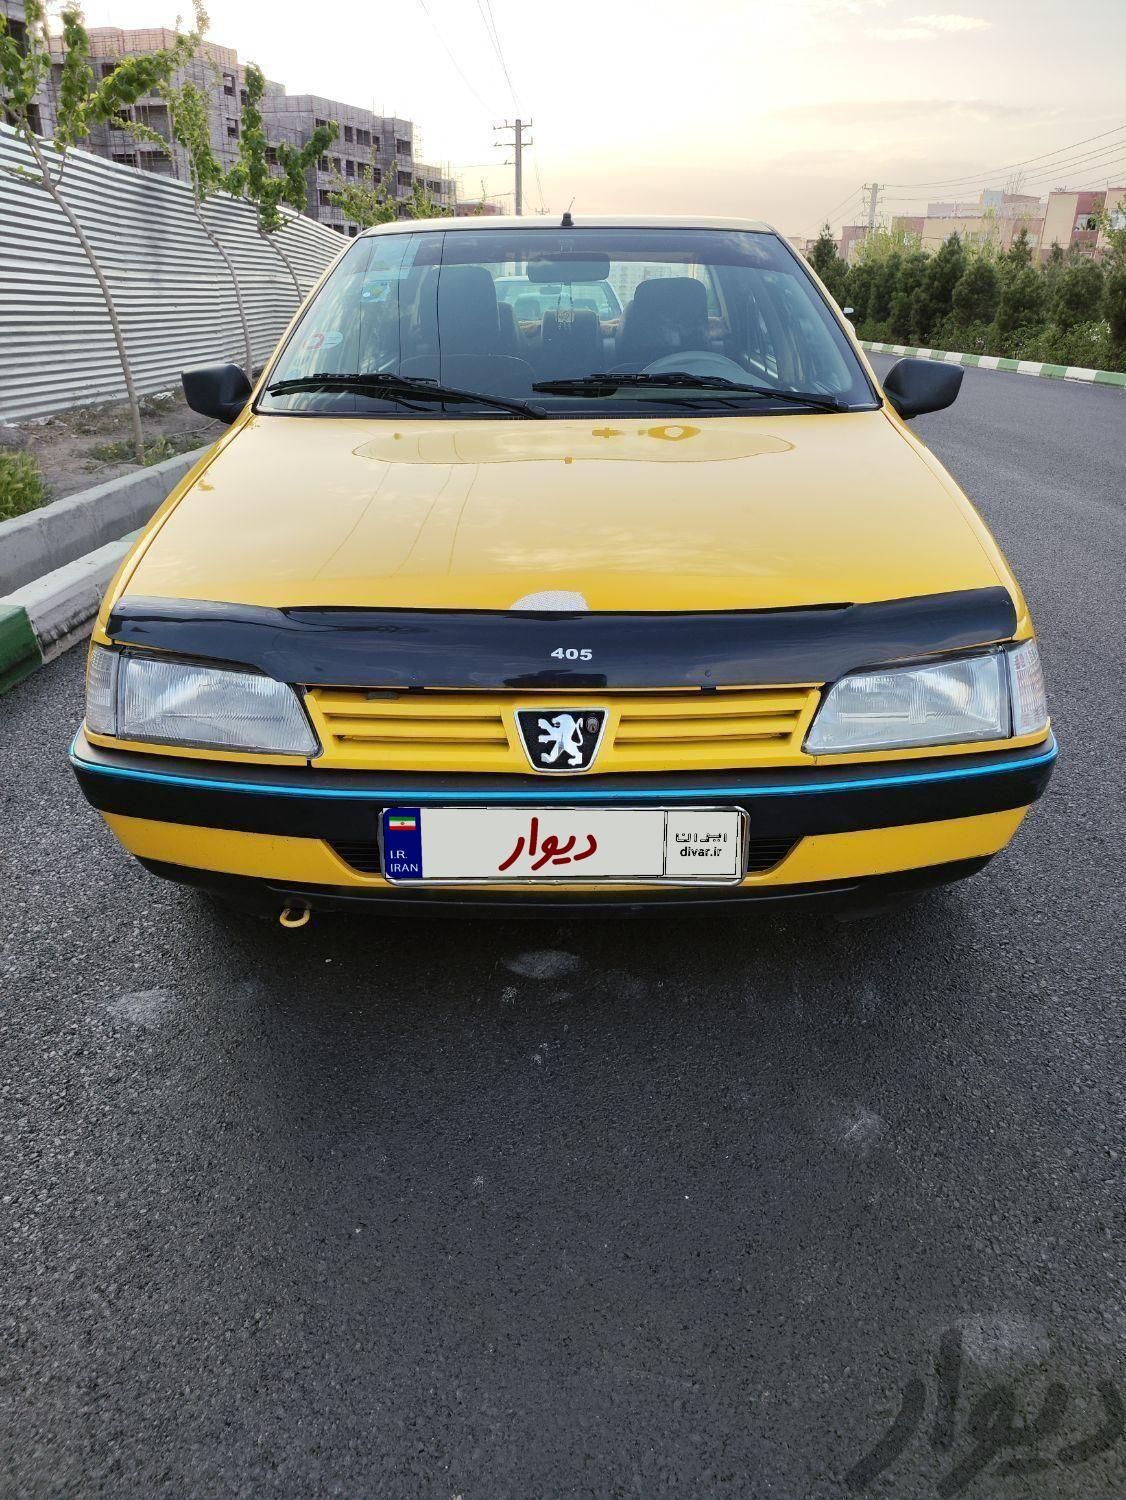 تاکسی پژو 405کرایه بیابانی پلاک ع مدل1400|سواری و وانت|تهران, آهنگ|دیوار